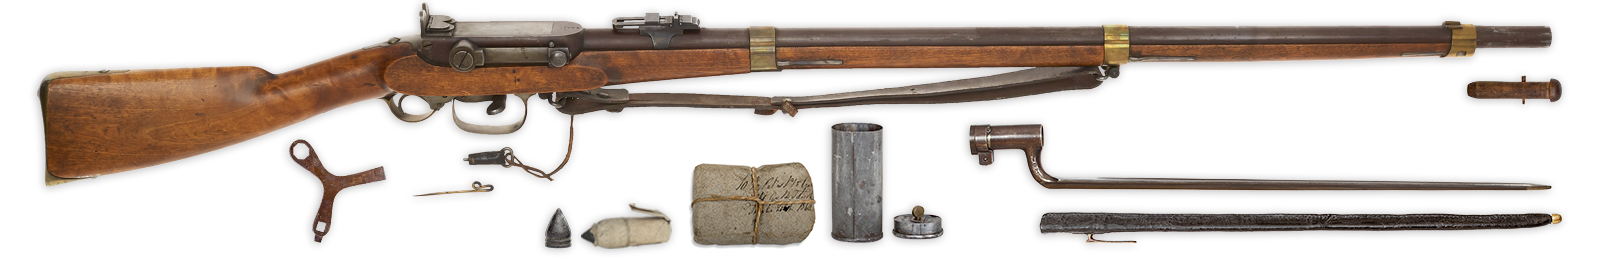 Skarpskyttergevær Modell 1849 med tilbehør. Fra venstre: Skrujern, rømnål,  klikningsstopper, kule, papirpatron, patronpakke, skrujernsdåse med oljeflaske i lokket, bajonett med balg og munningspropp.